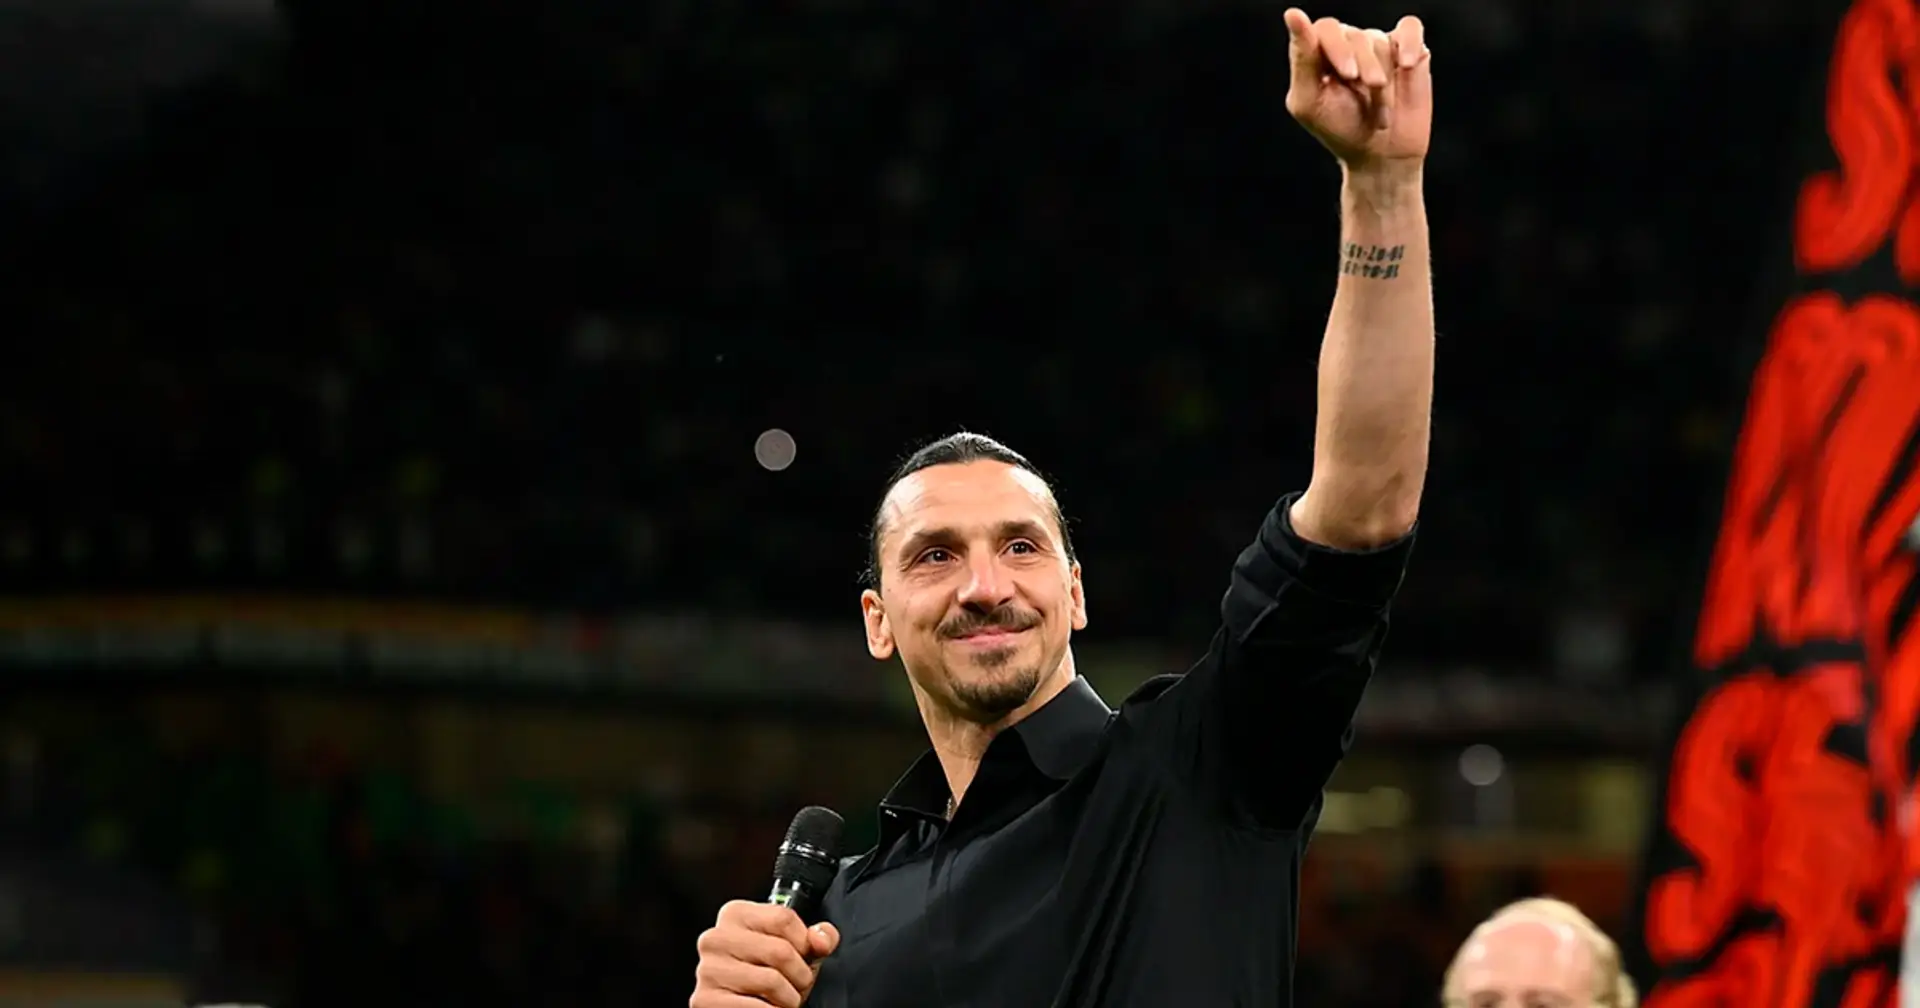 Zlatan zu den gegnerischen Fans: "Buht weiter. Das ist der größte Moment in eurem Jahr, da ihr mich gesehen habt"